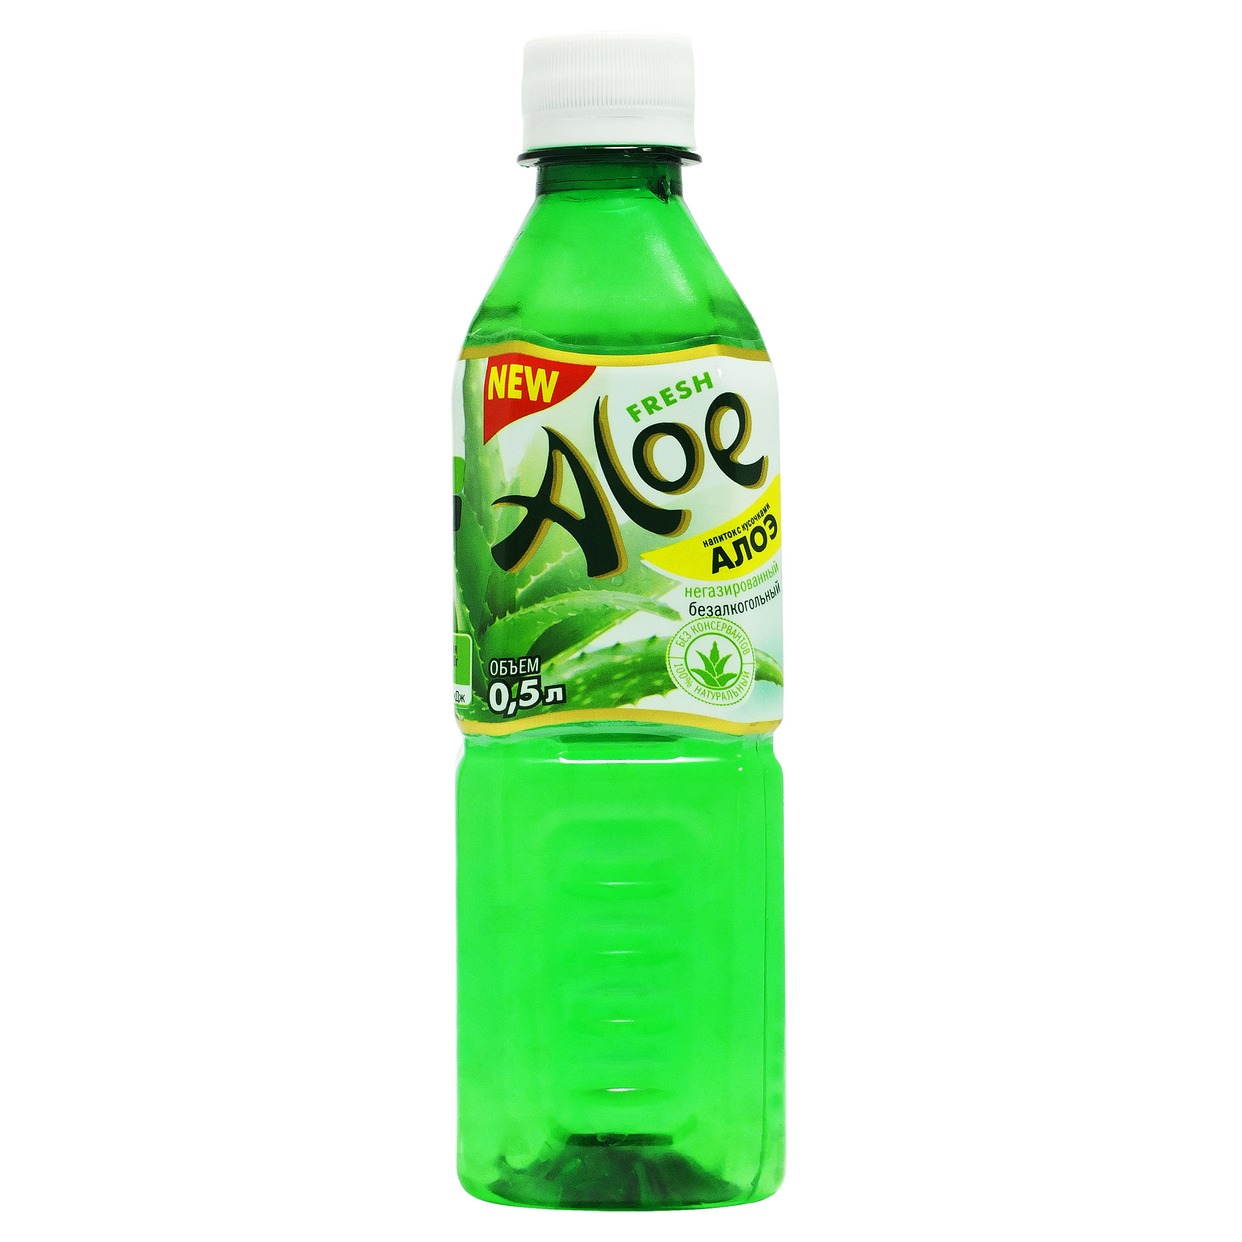 Напиток "FRESH ALOE" безалкогольный негазированный пастеризованный с кусочками алоэ 0,5л по акции в Пятерочке